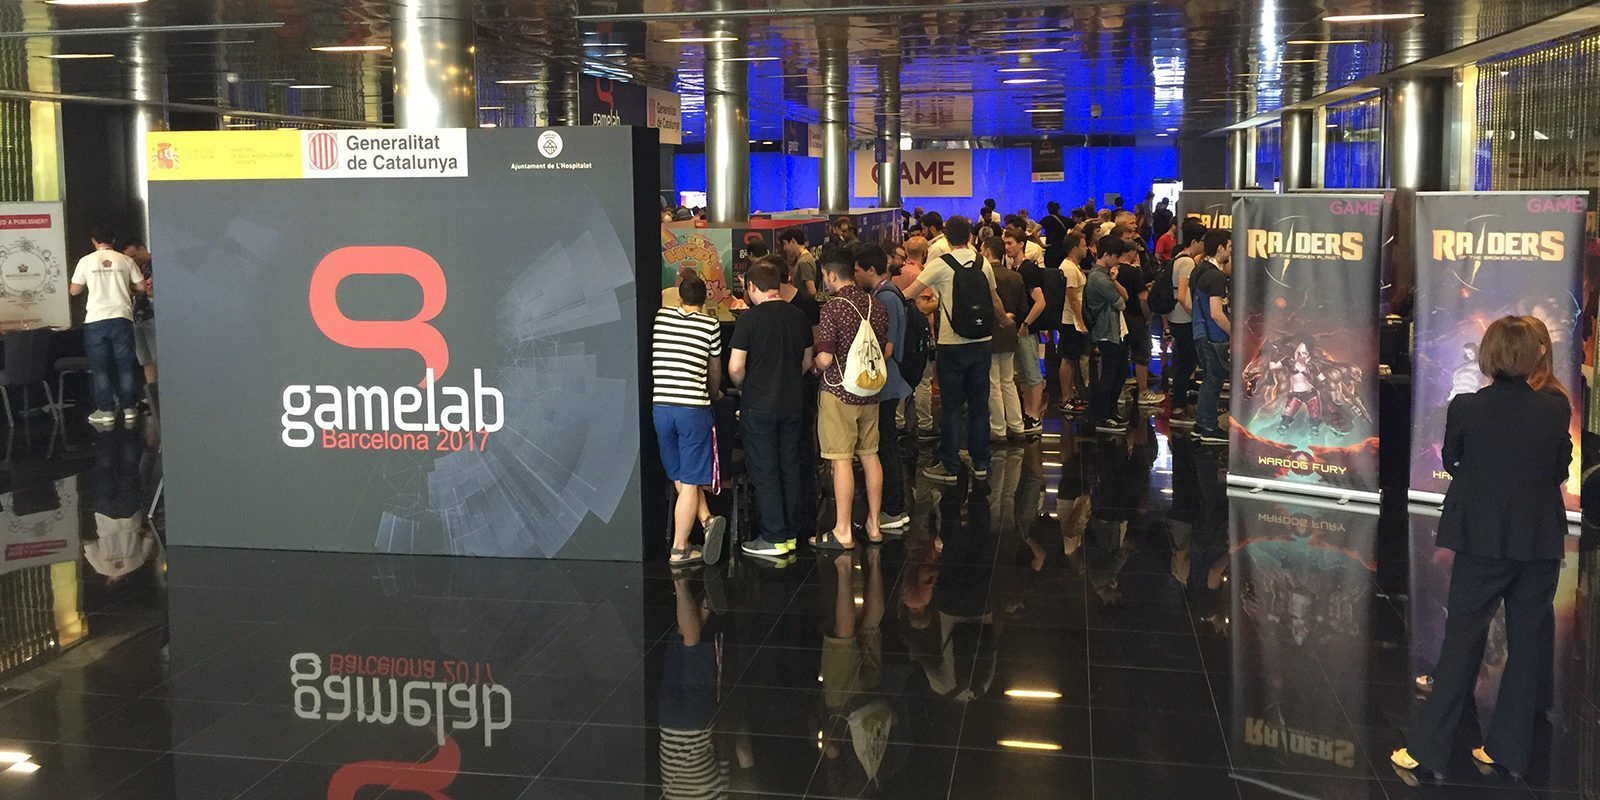 Gamelab 2018 se celebrará del 27 al 29 de junio en Barcelona